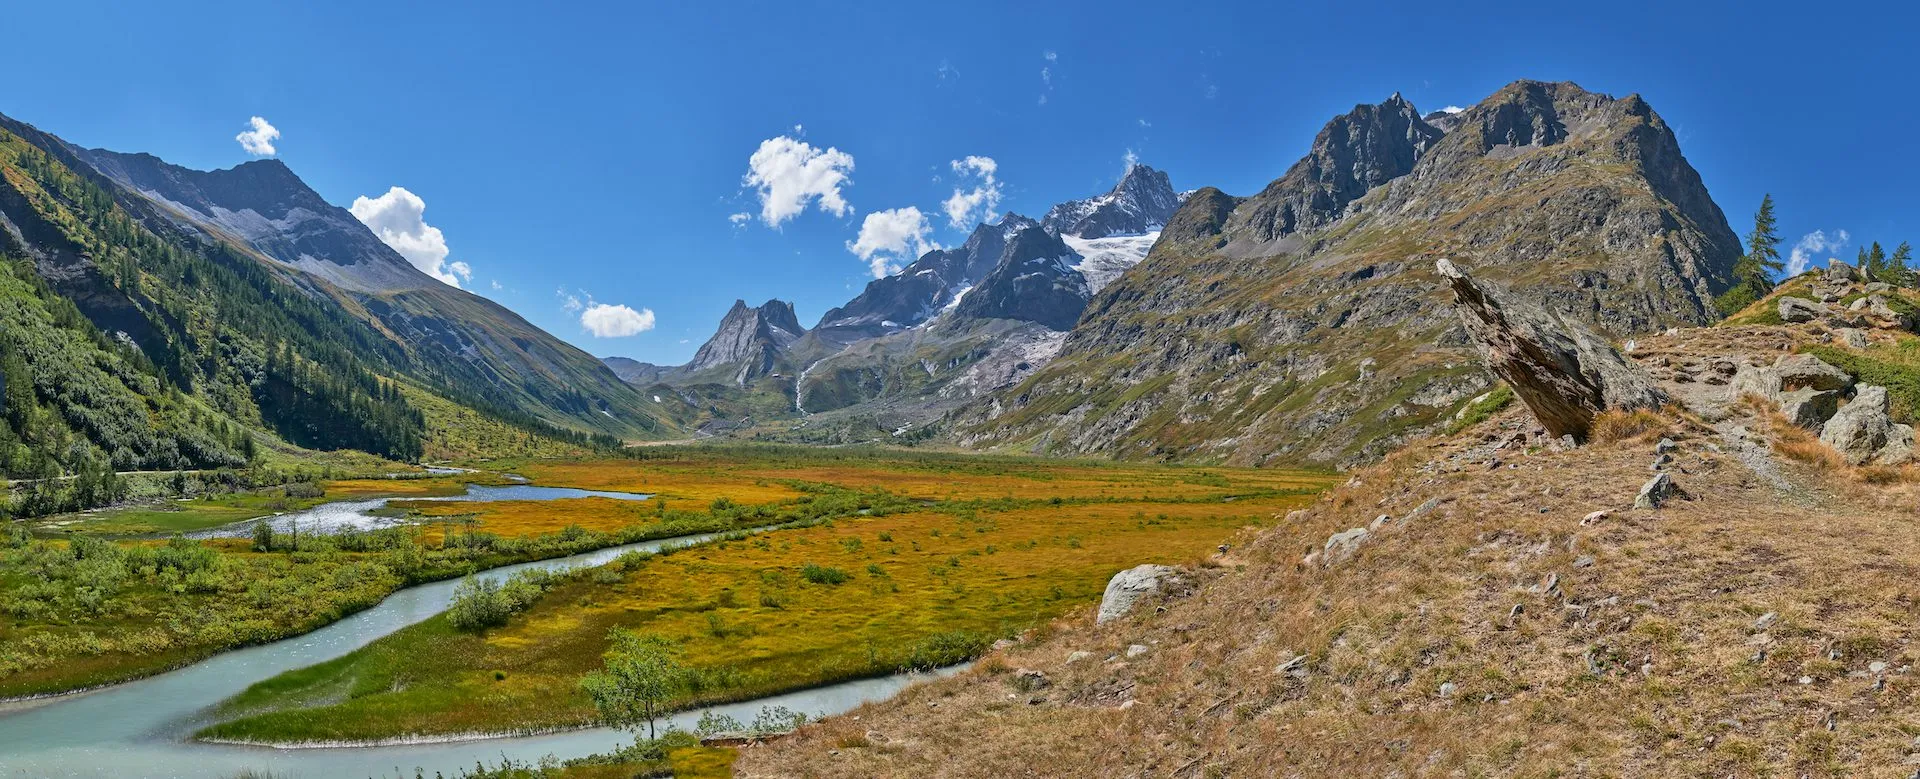 Живописный вид на итальянские Альпы с массива Монблан с долиной Валь-Вени и озером Комбаль